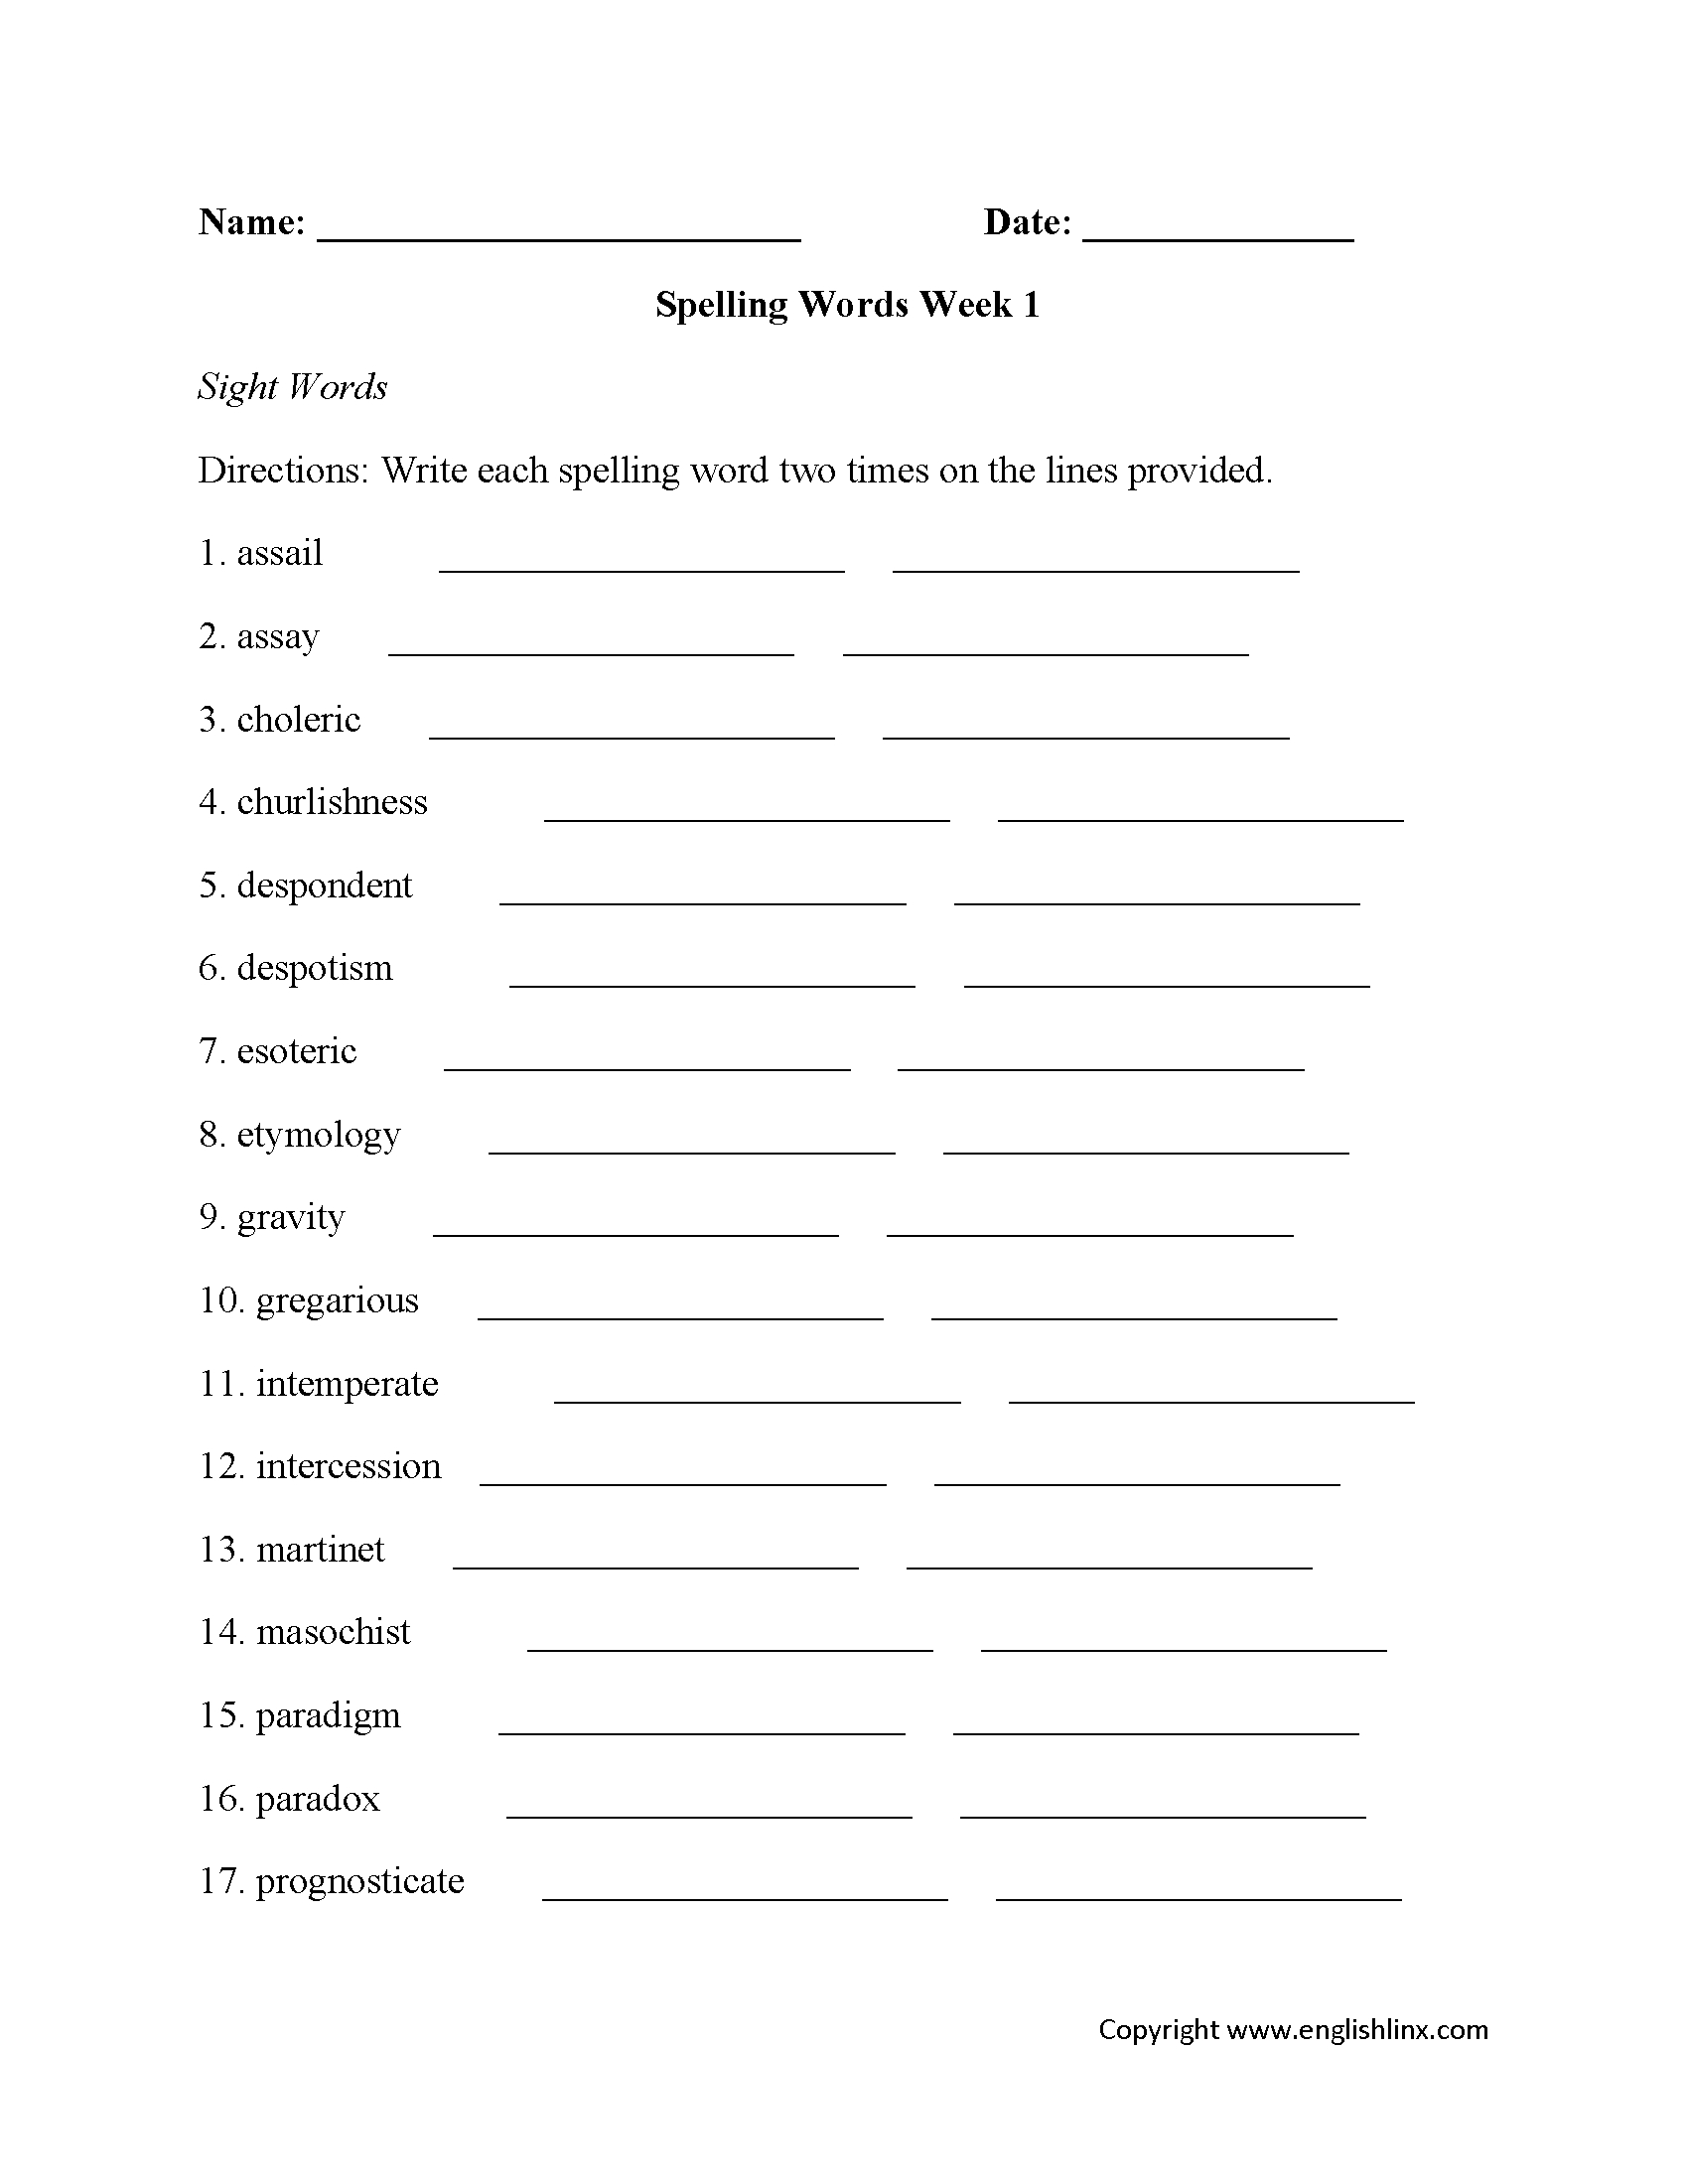 Spelling Worksheets | High School Spelling Worksheets - Free Printable Spelling Practice Worksheets